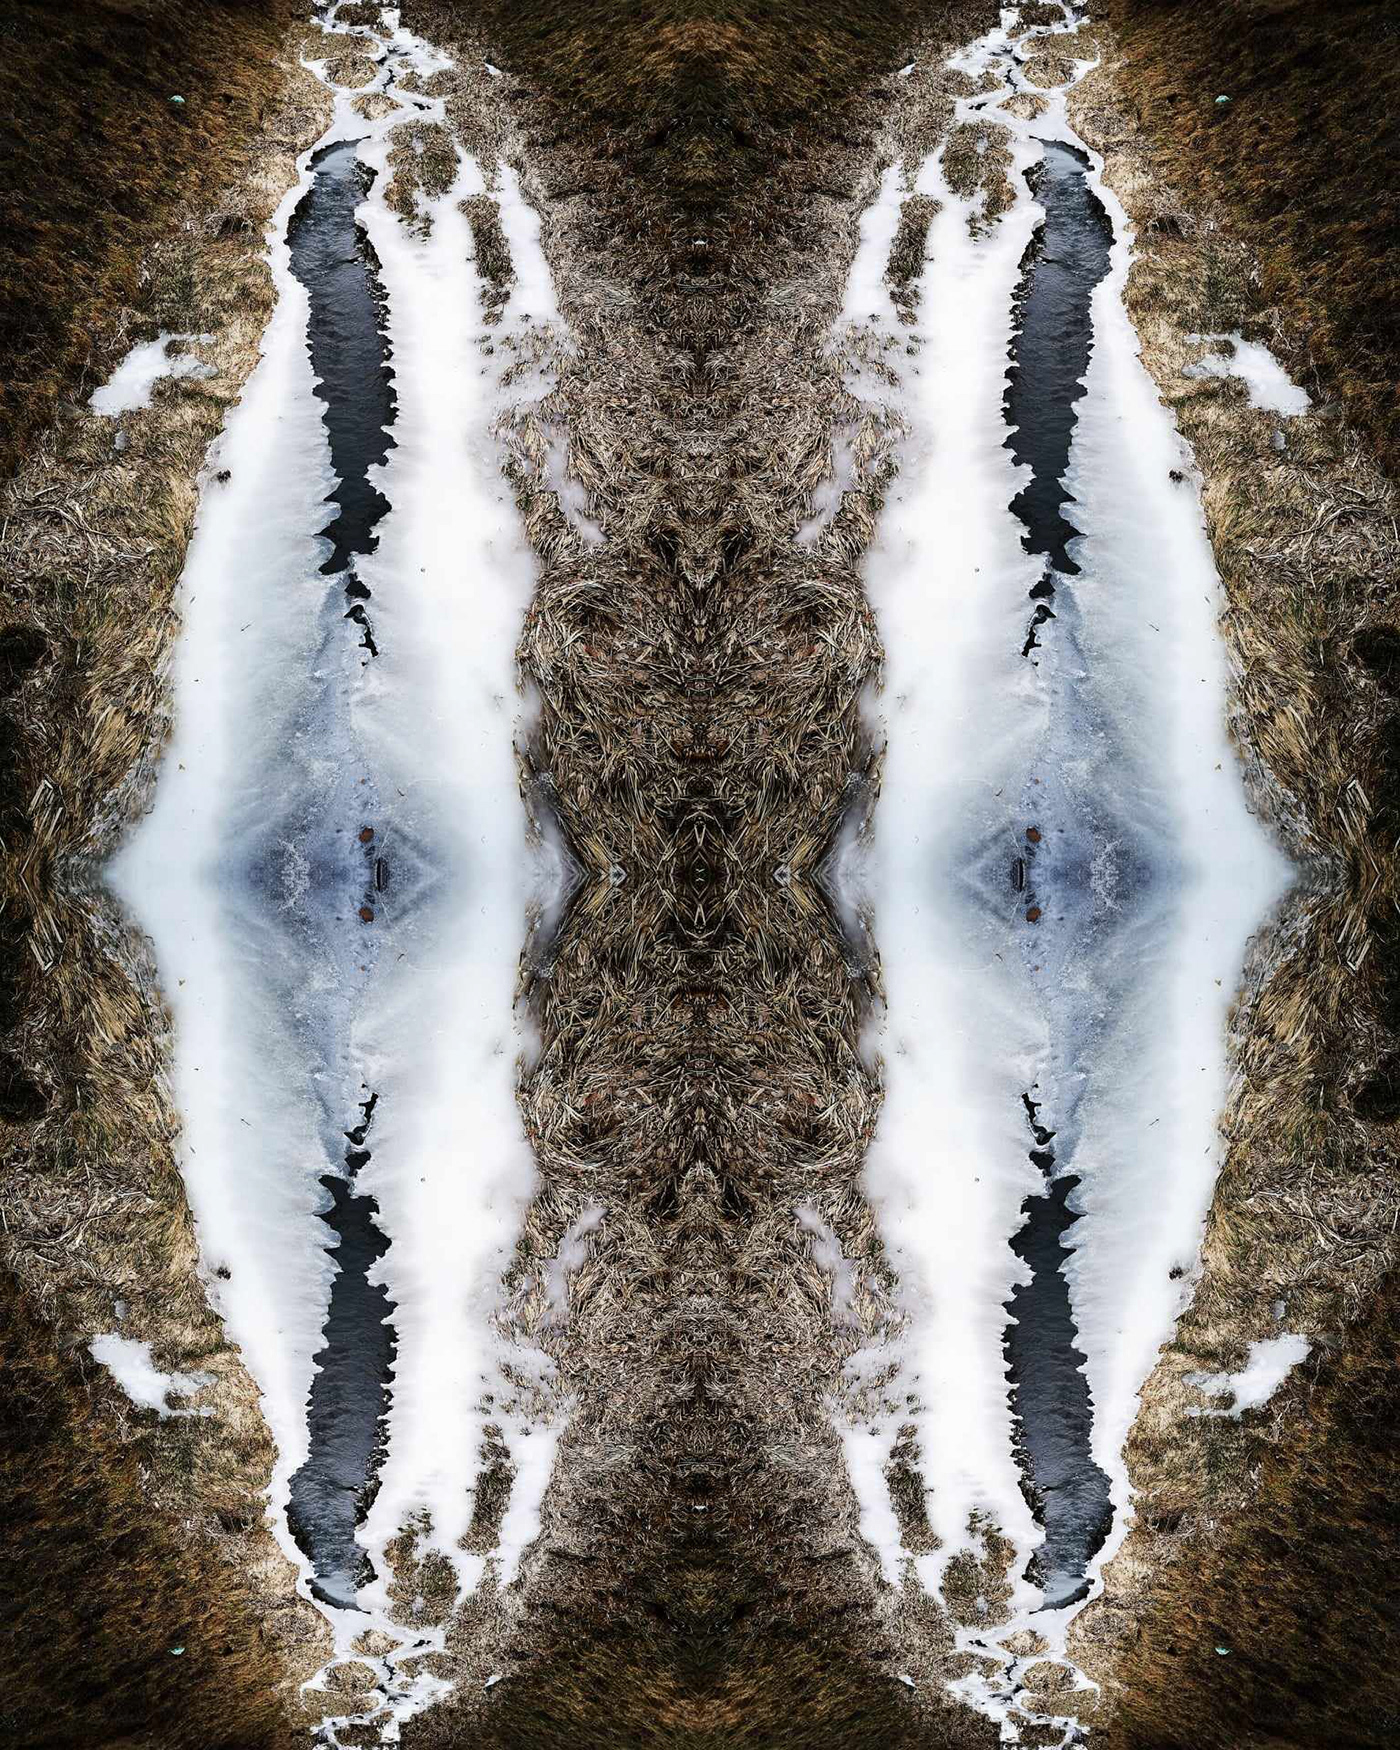 Salt stream collage art one photo